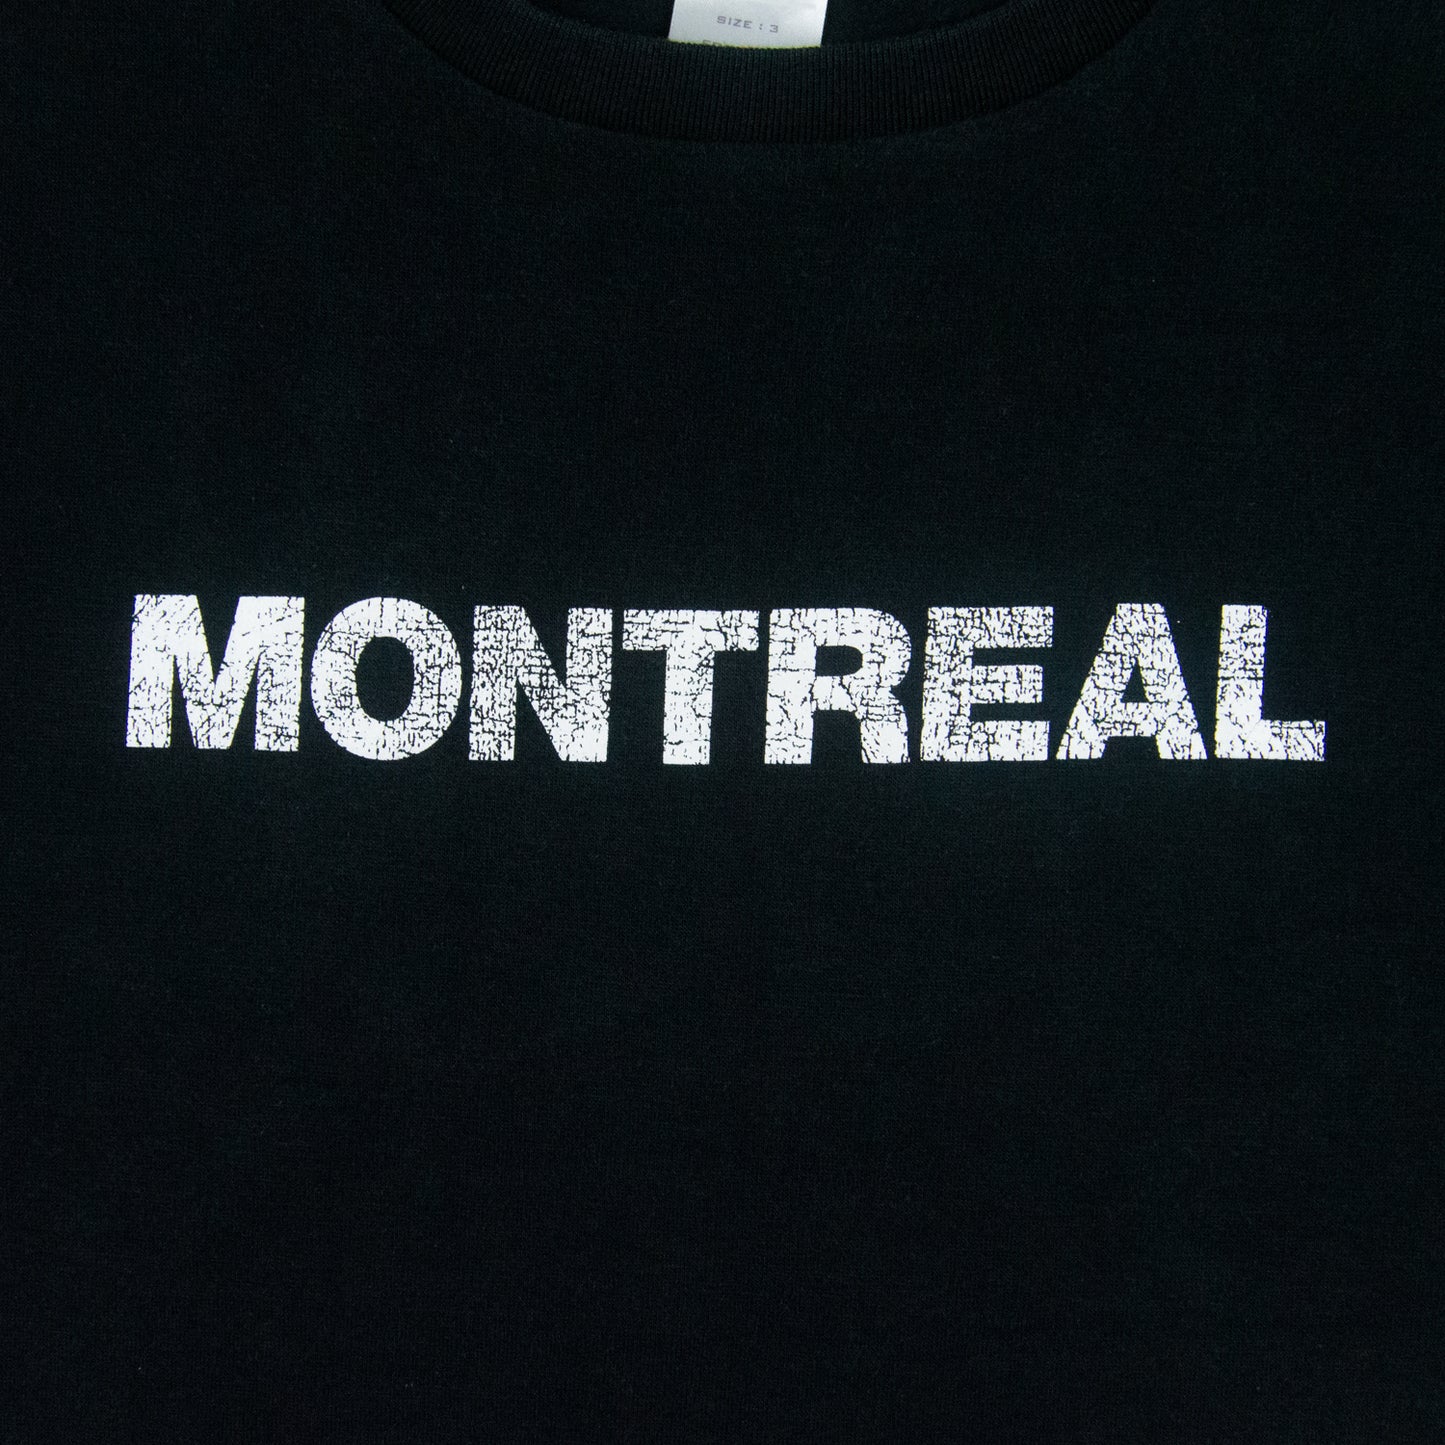 Number (N)ine Montreal Tee – SS01